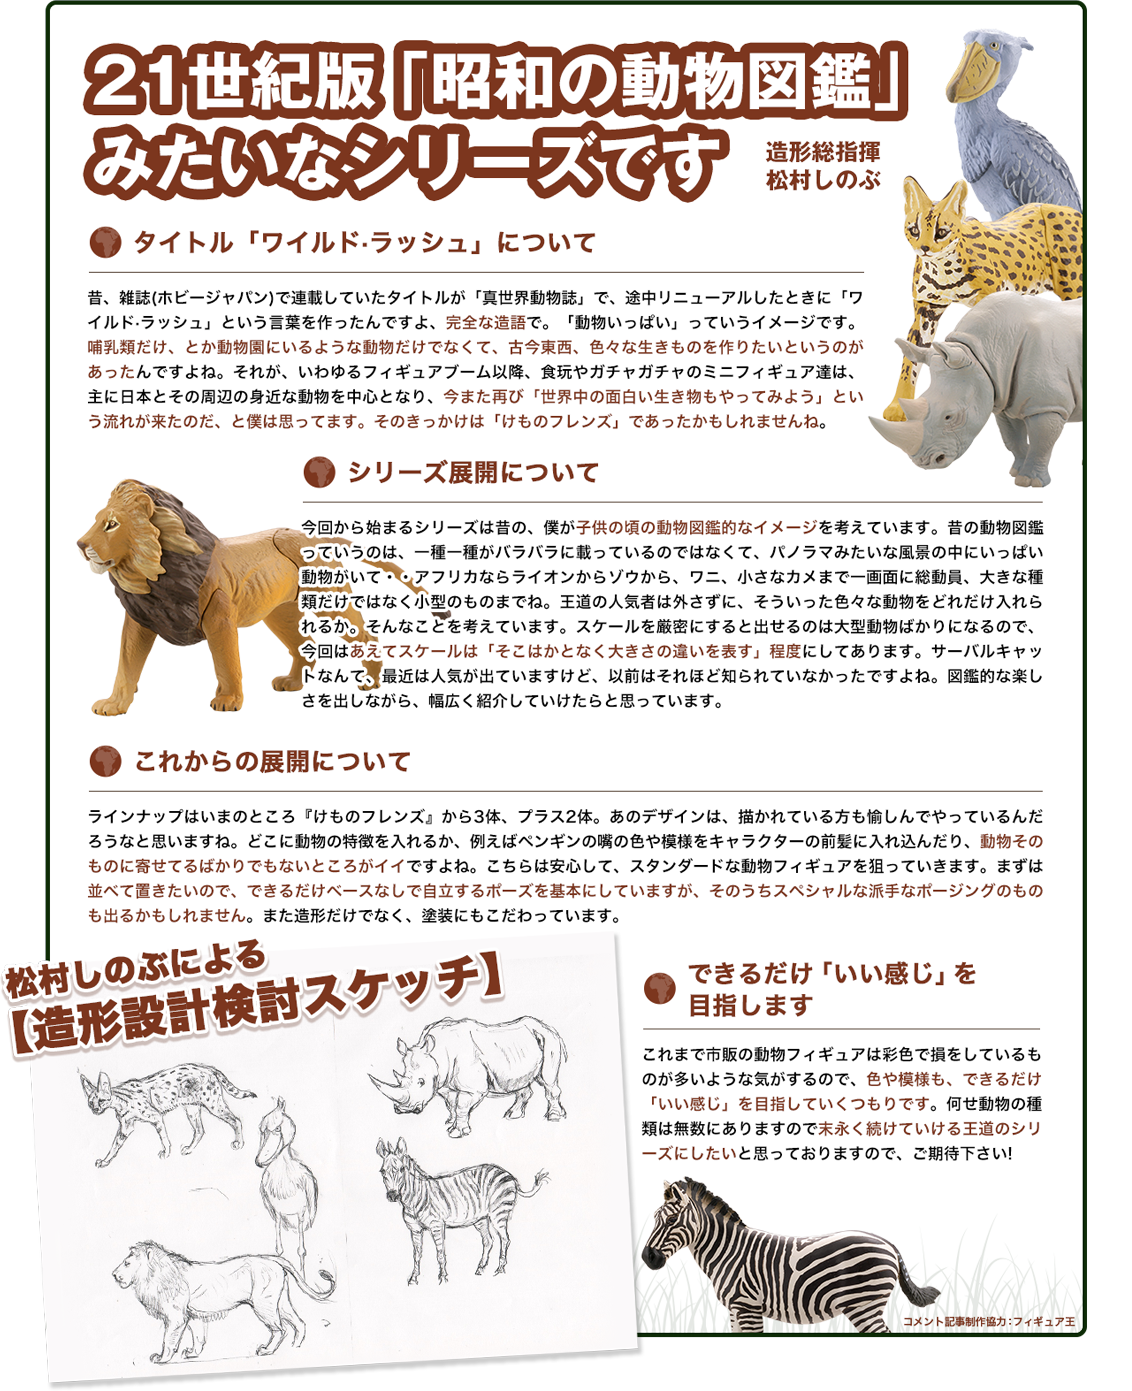 21世紀版「昭和の動物図鑑」みたいなシリーズです 造形総指揮松村しのぶ